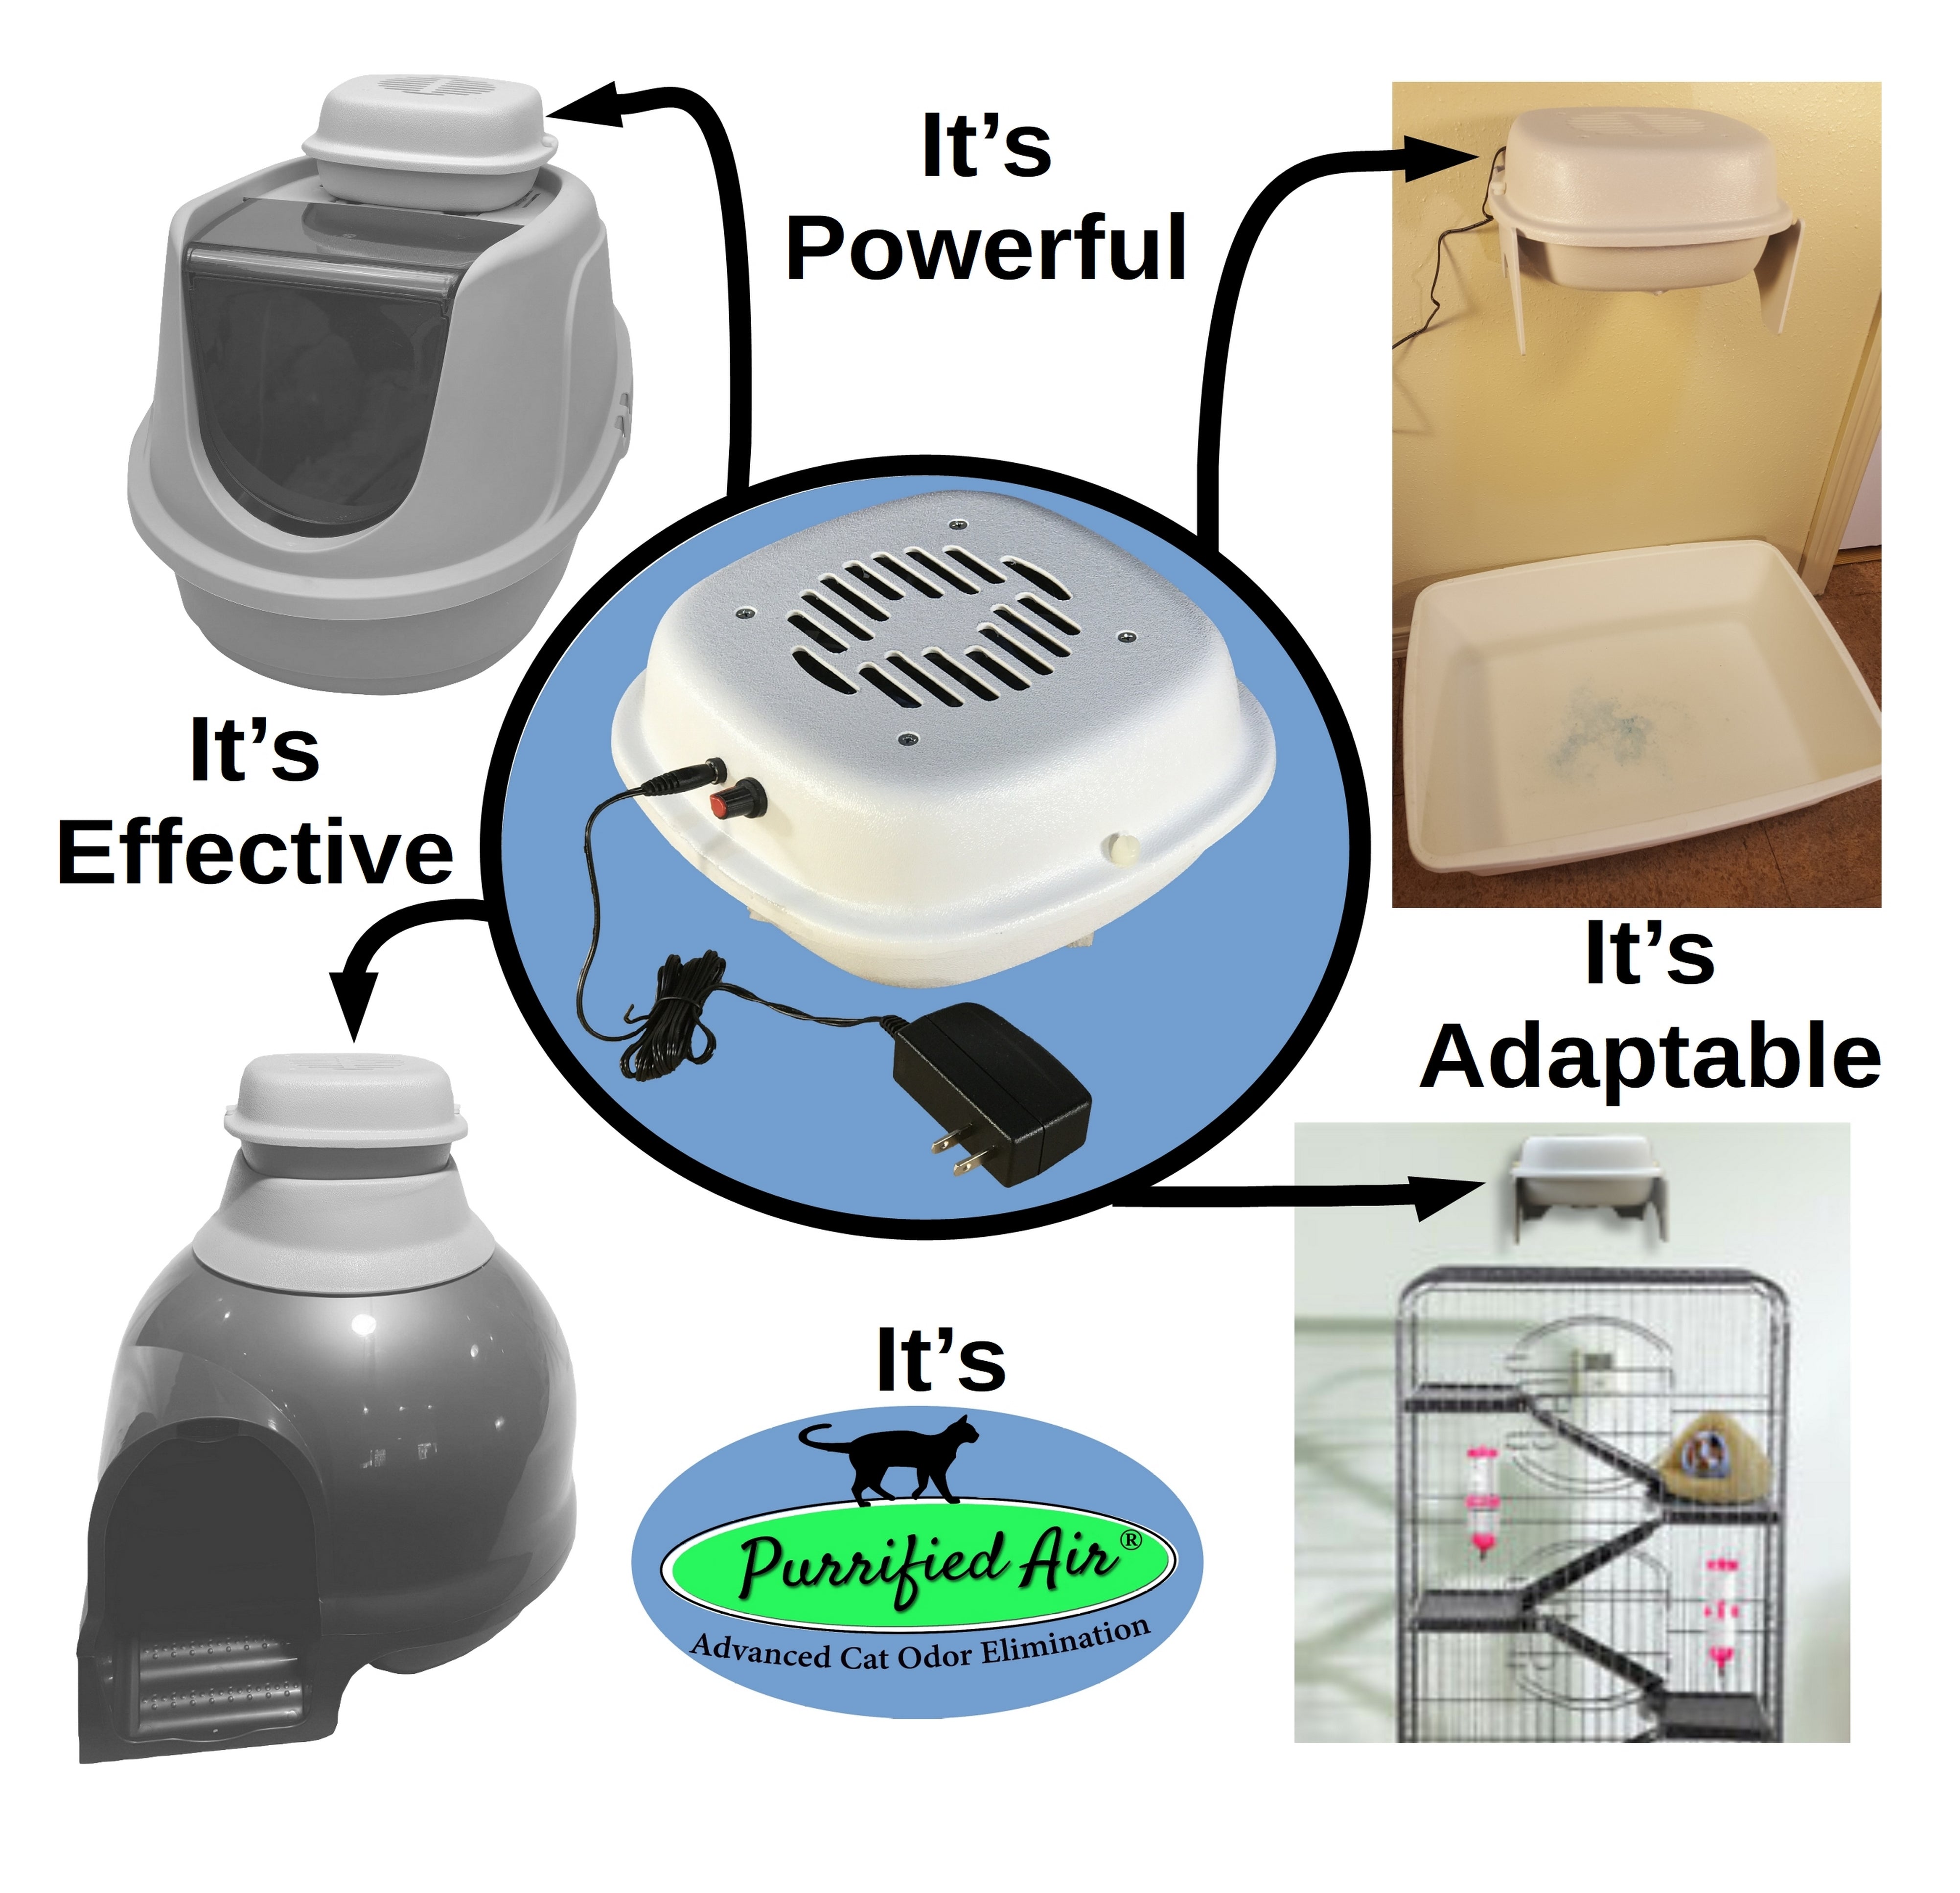 Purrified Air Litter Box Air Purifier - Purrified Air, Pet odor control - cat odor and litter box air filter, Purrified Air  - Purrified Air, Purrified Air  Purrified Air